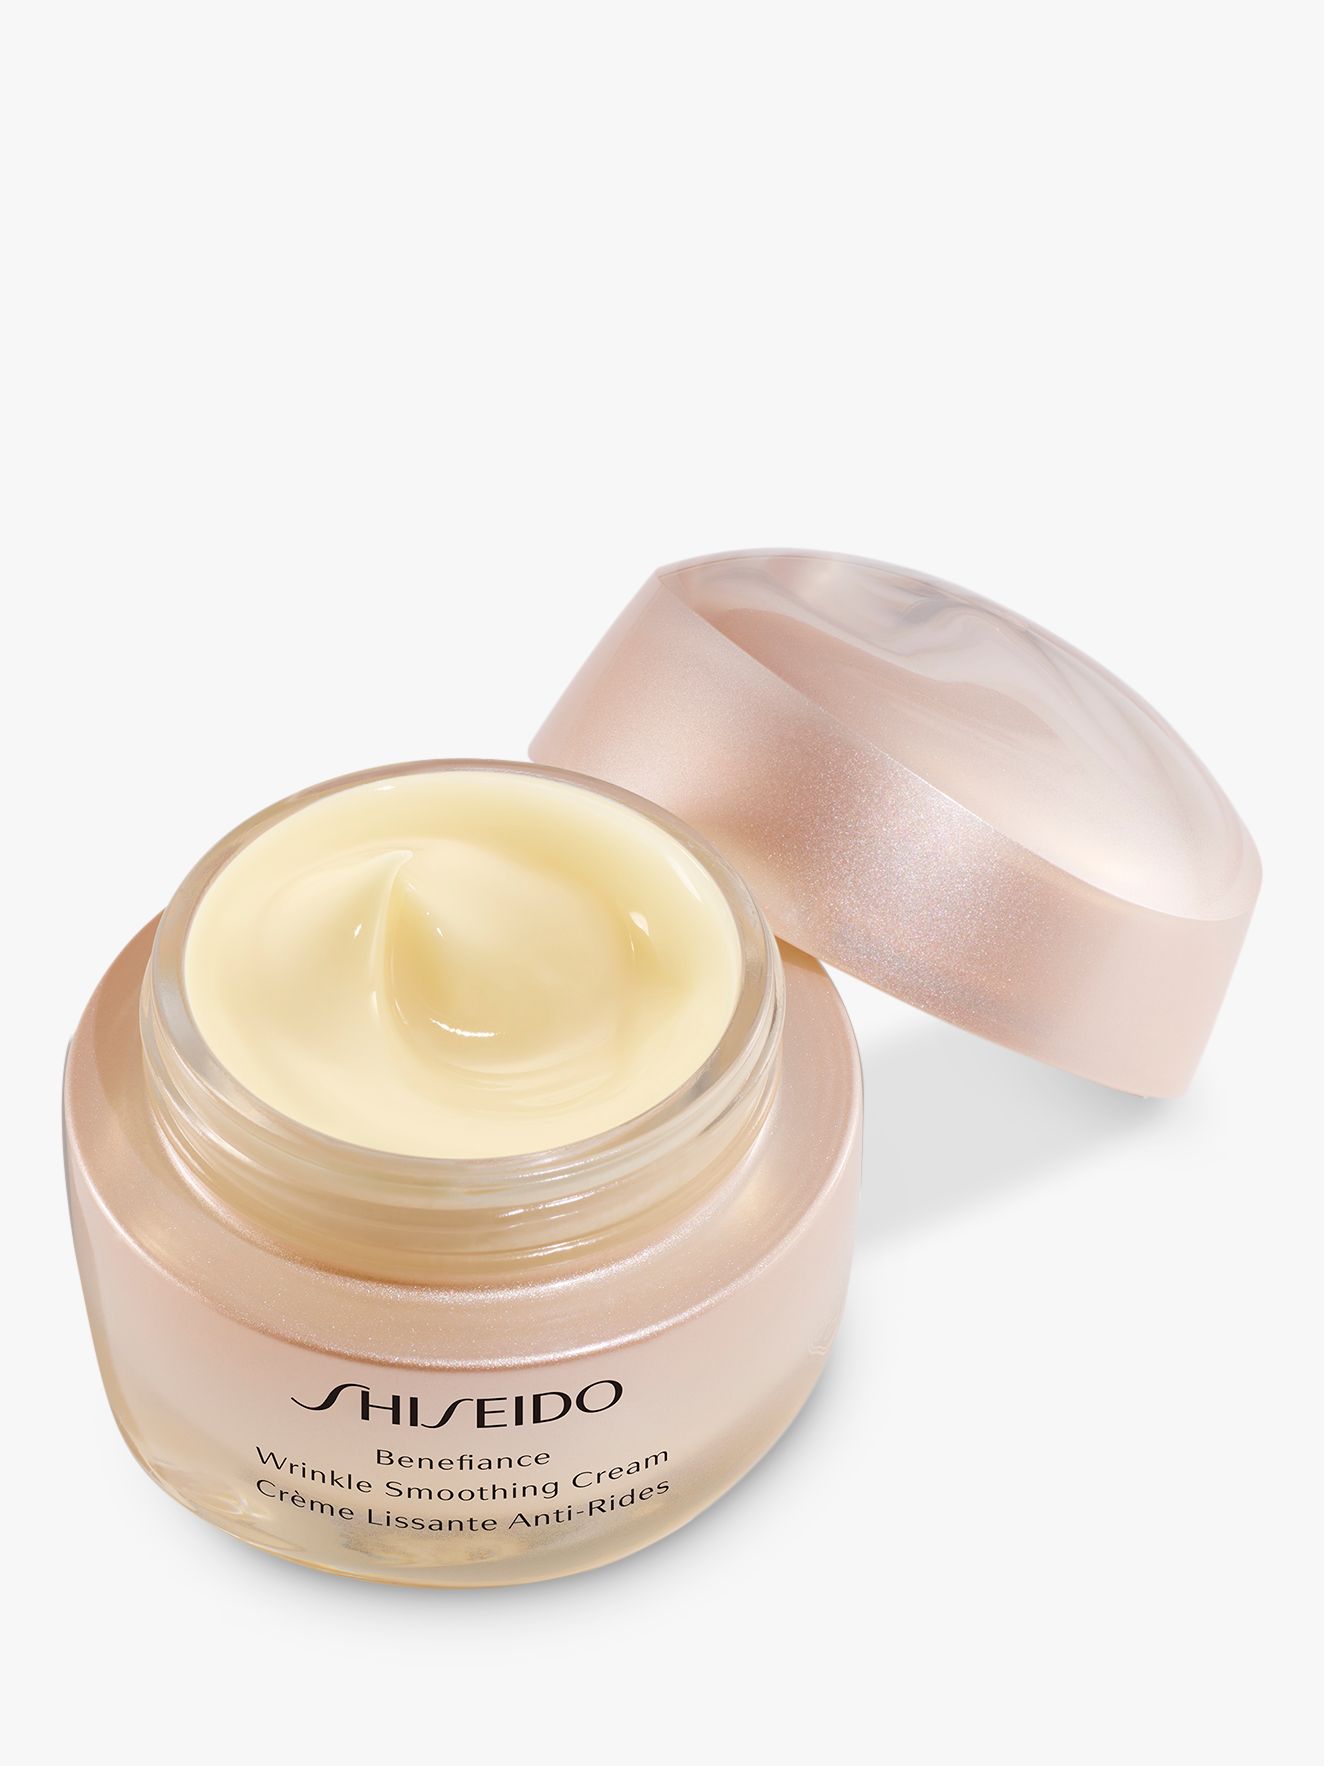 Shiseido Benefiance Wrinkle Smoothing Cream, 50ml